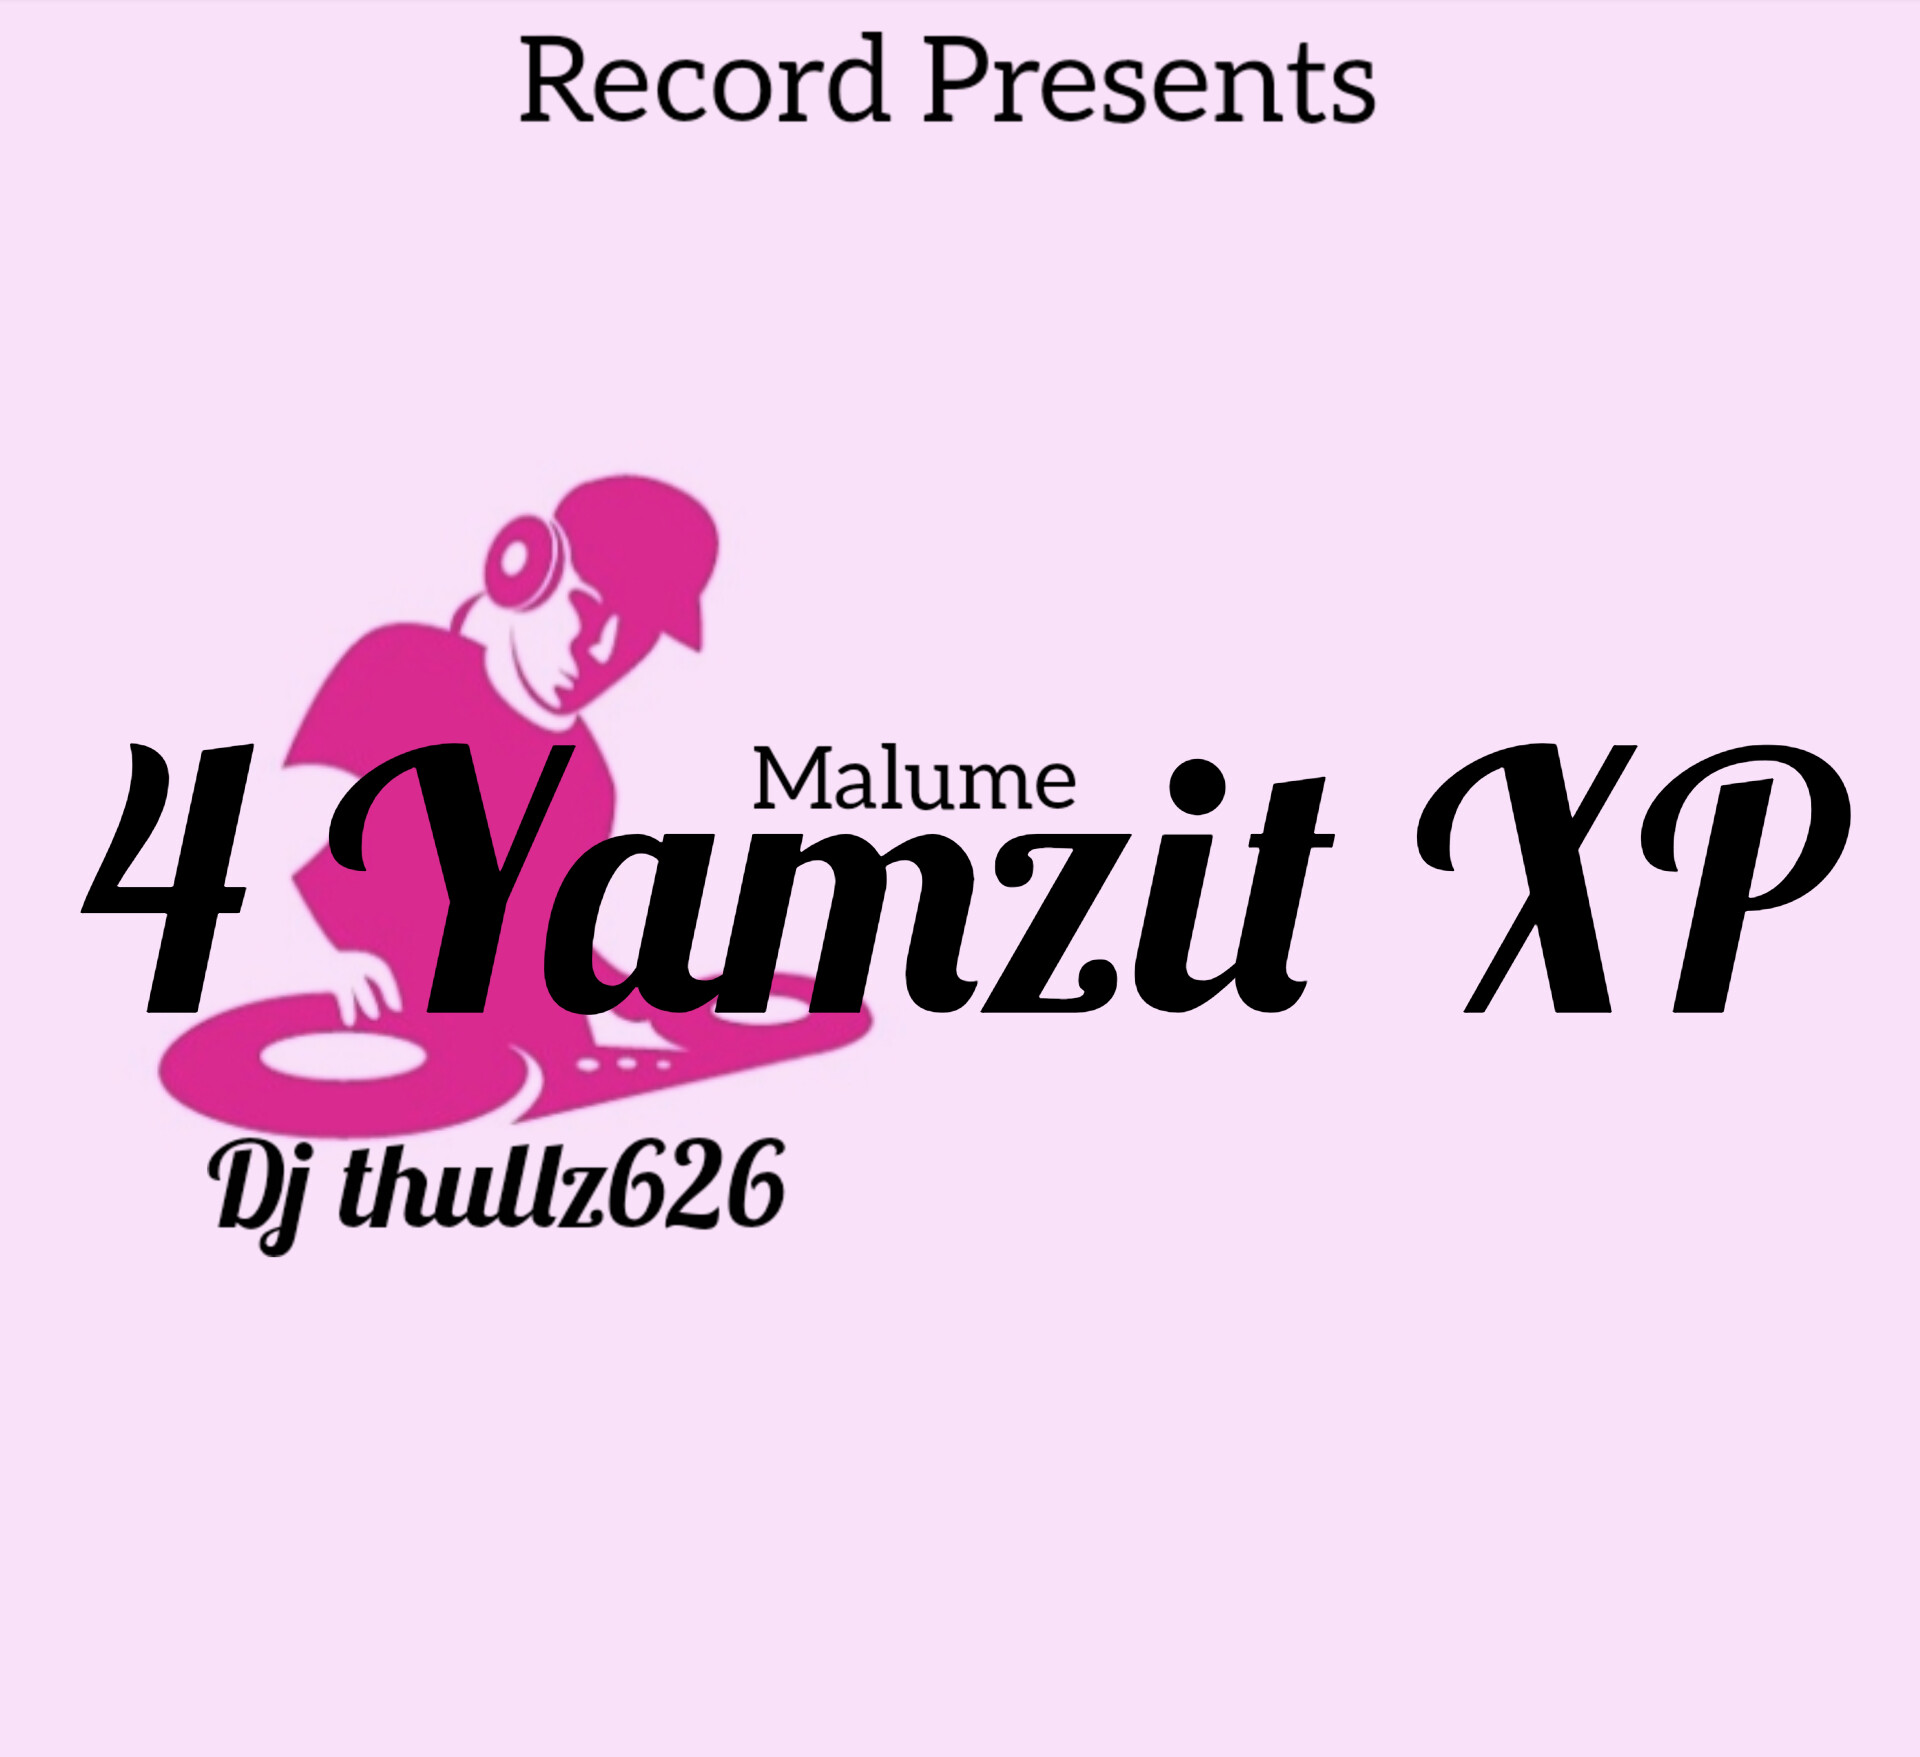 Tribute to Malume (4 Yamzit Xp) - Dj thullz626